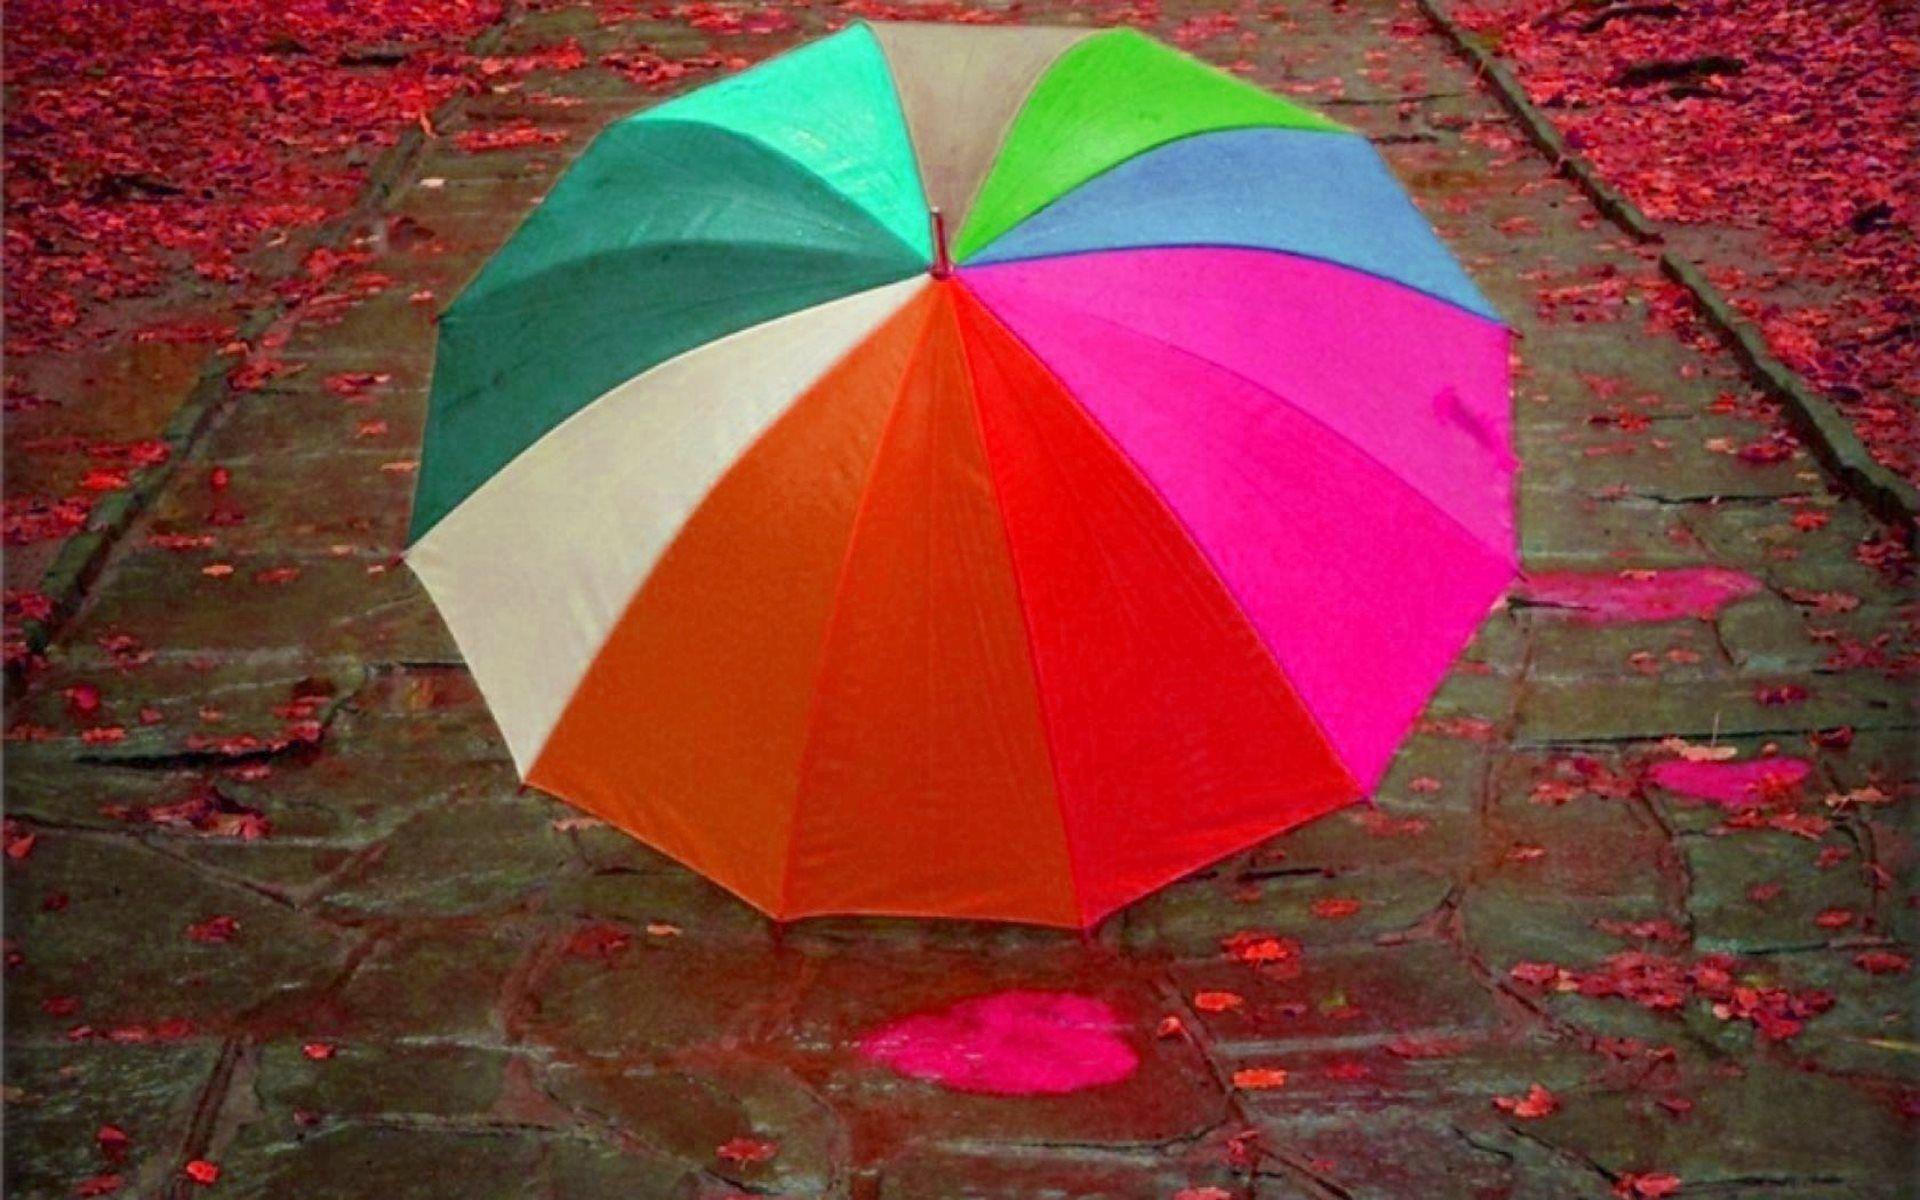 Umbrella Wallpapers - Top Free Umbrella Backgrounds ...